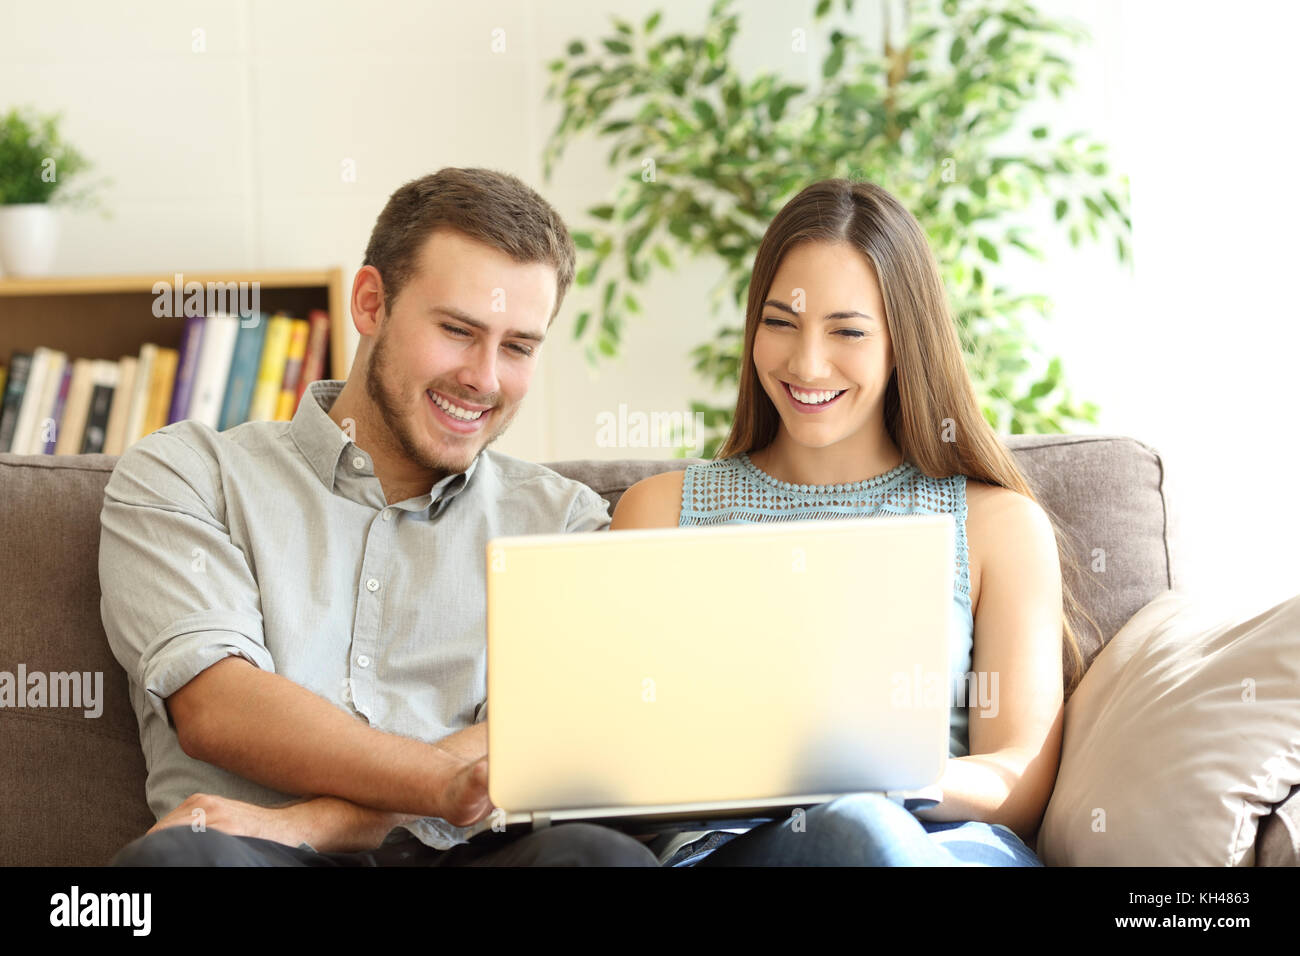 Vue avant, portrait d'un jeune couple heureux à l'aide d'un laptop assis sur un canapé dans la salle de séjour à la maison Banque D'Images